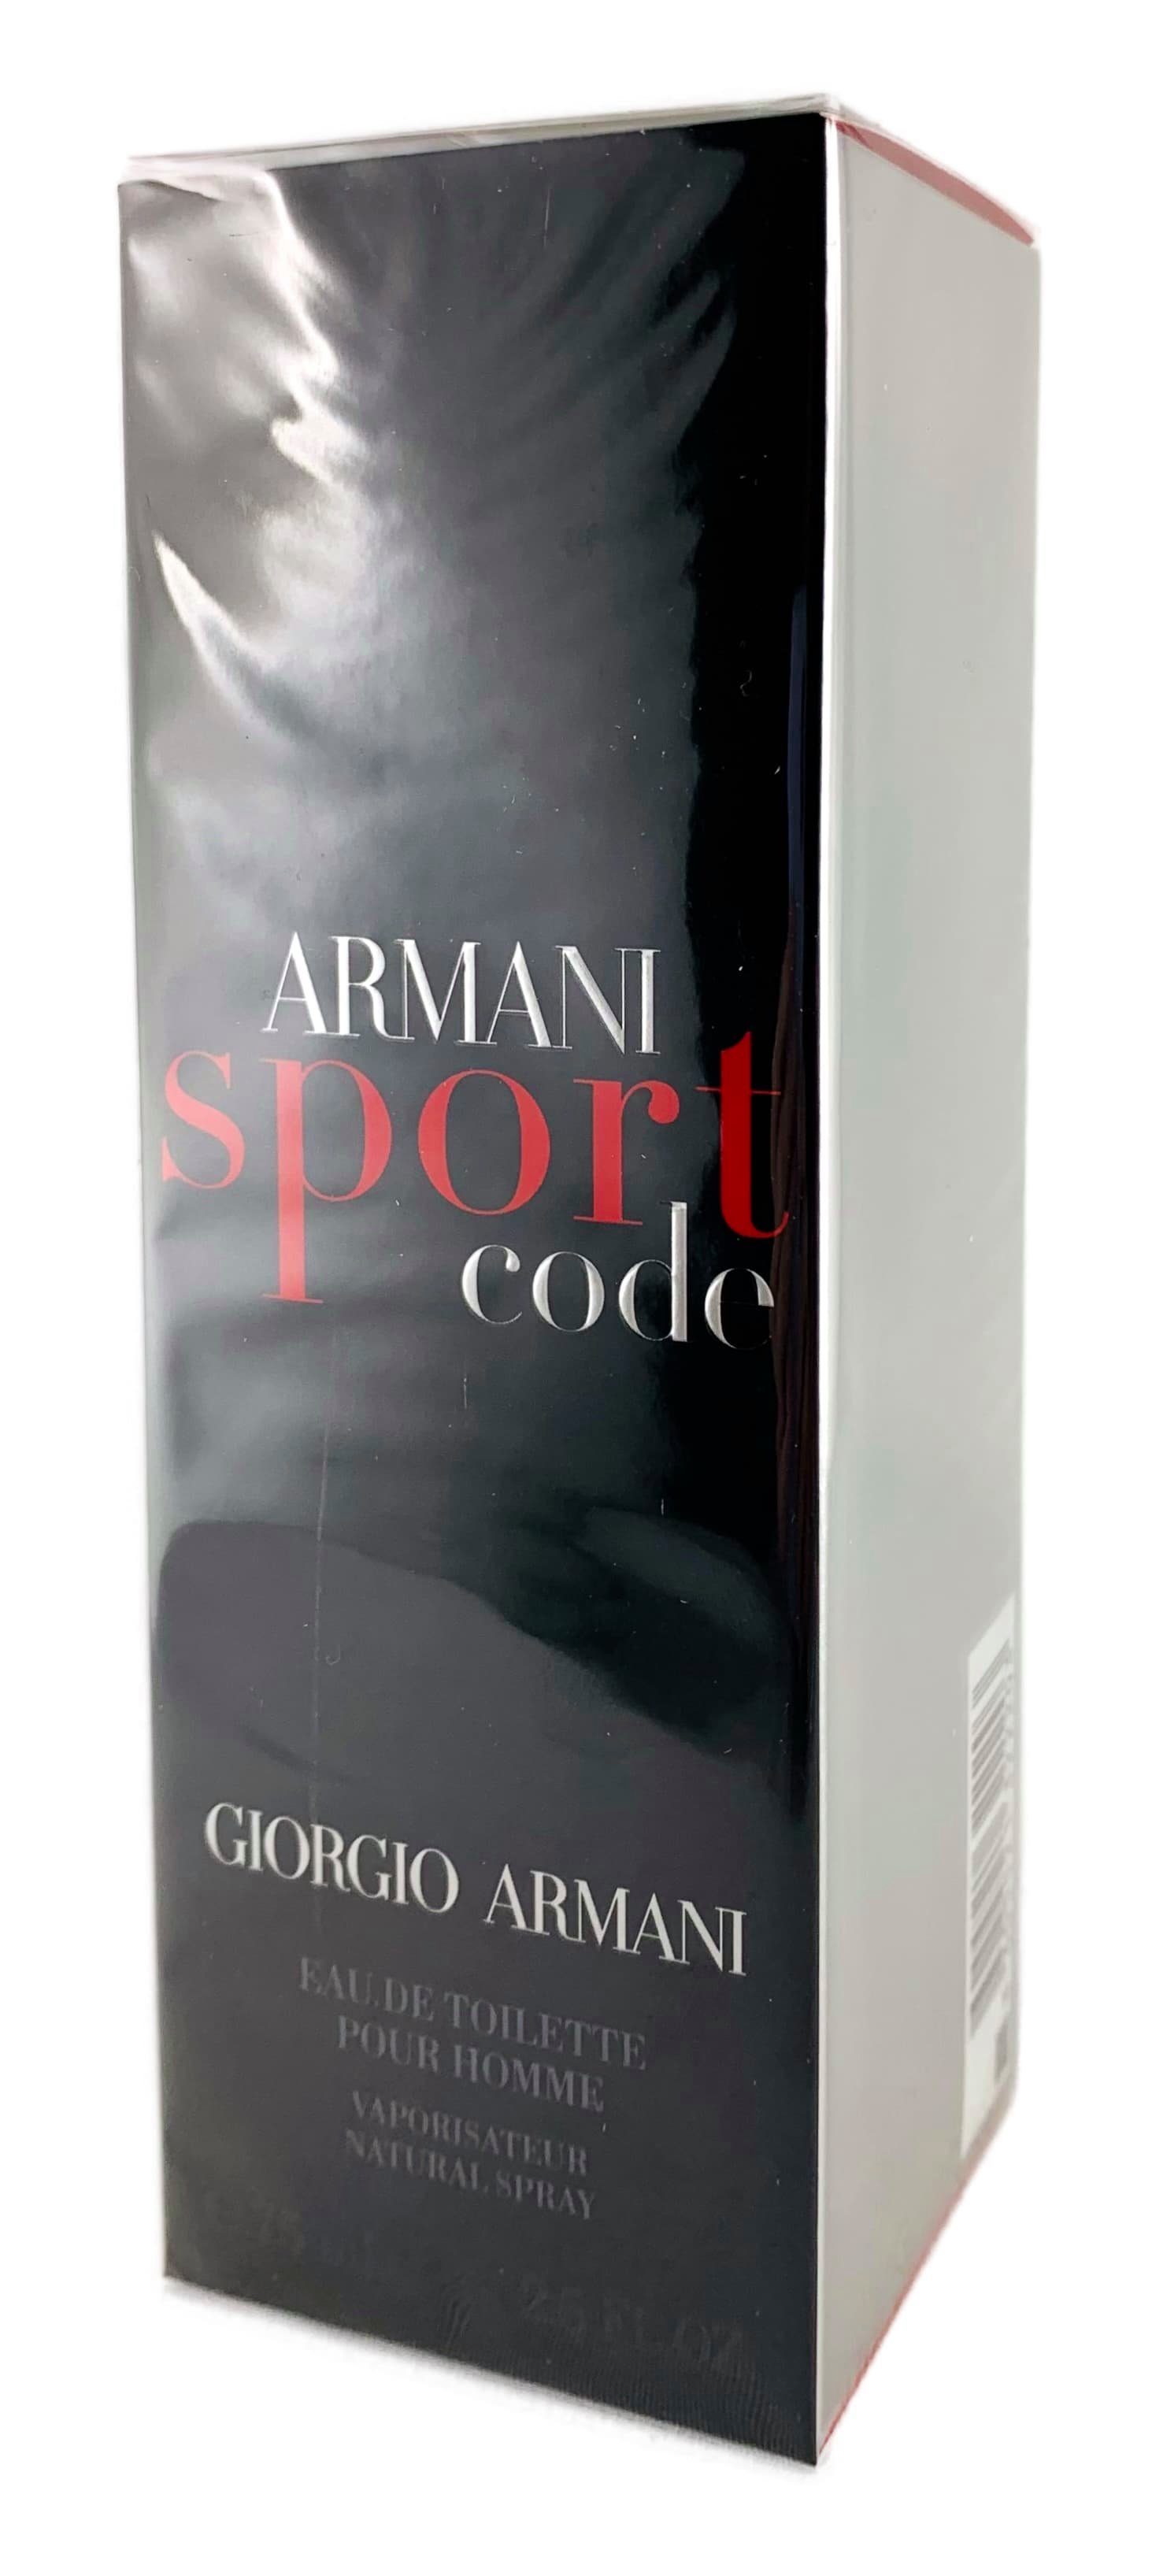 Giorgio Armani Eau de Toilette Armani "Sport Code" Edt Spray 75 ml